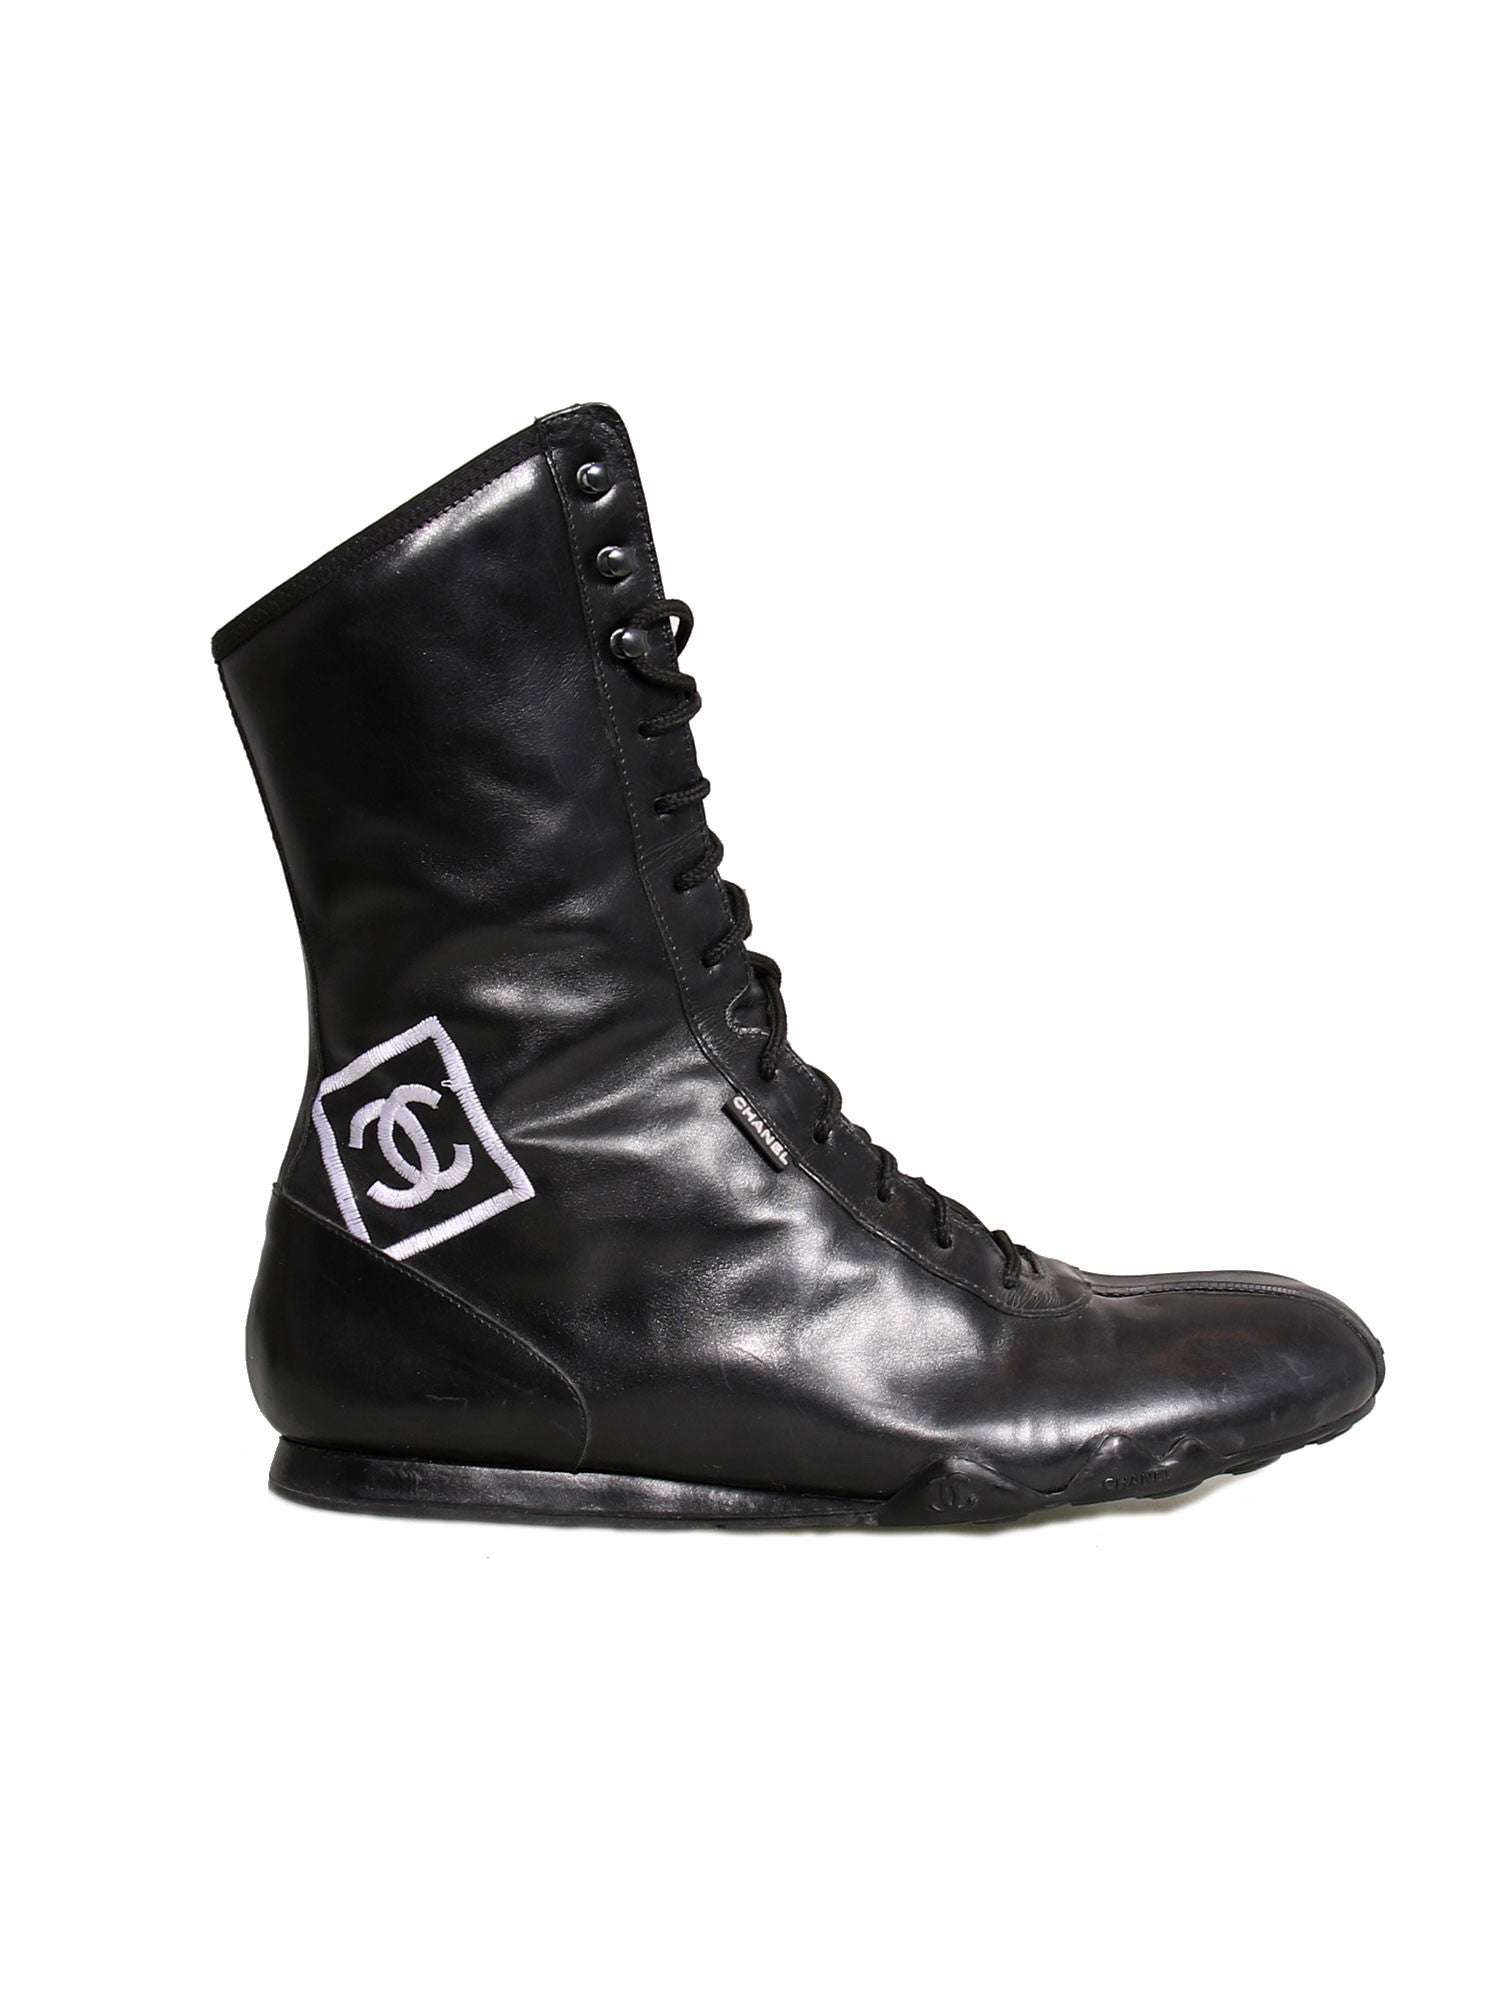 Chanel Vintage Black Leather CC Combat Boots sz 36  ASC Resale